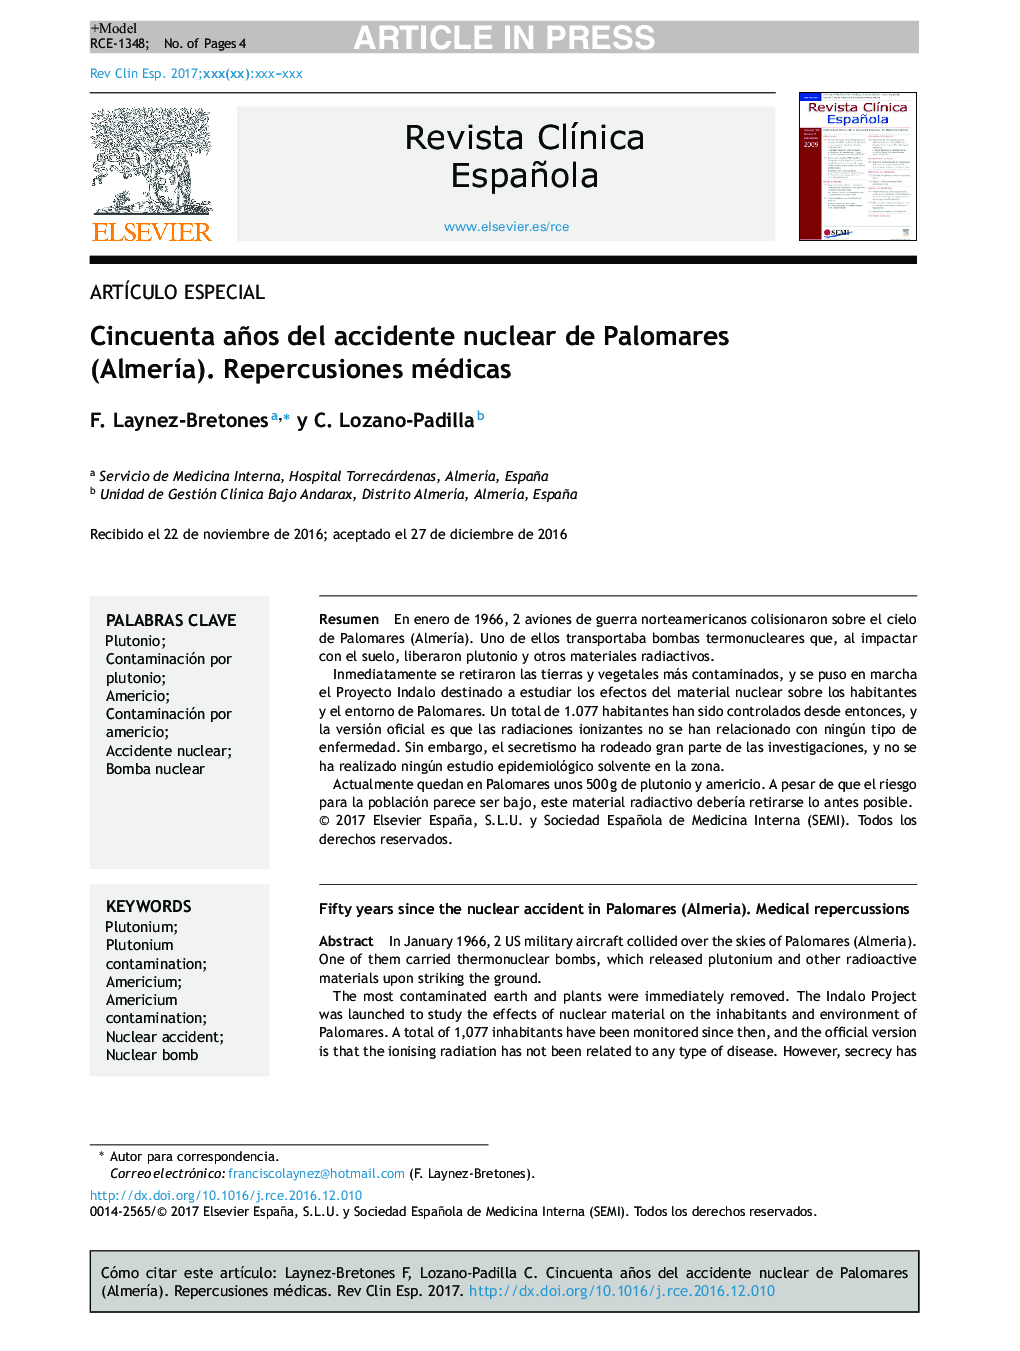 Cincuenta años del accidente nuclear de Palomares (AlmerÃ­a). Repercusiones médicas